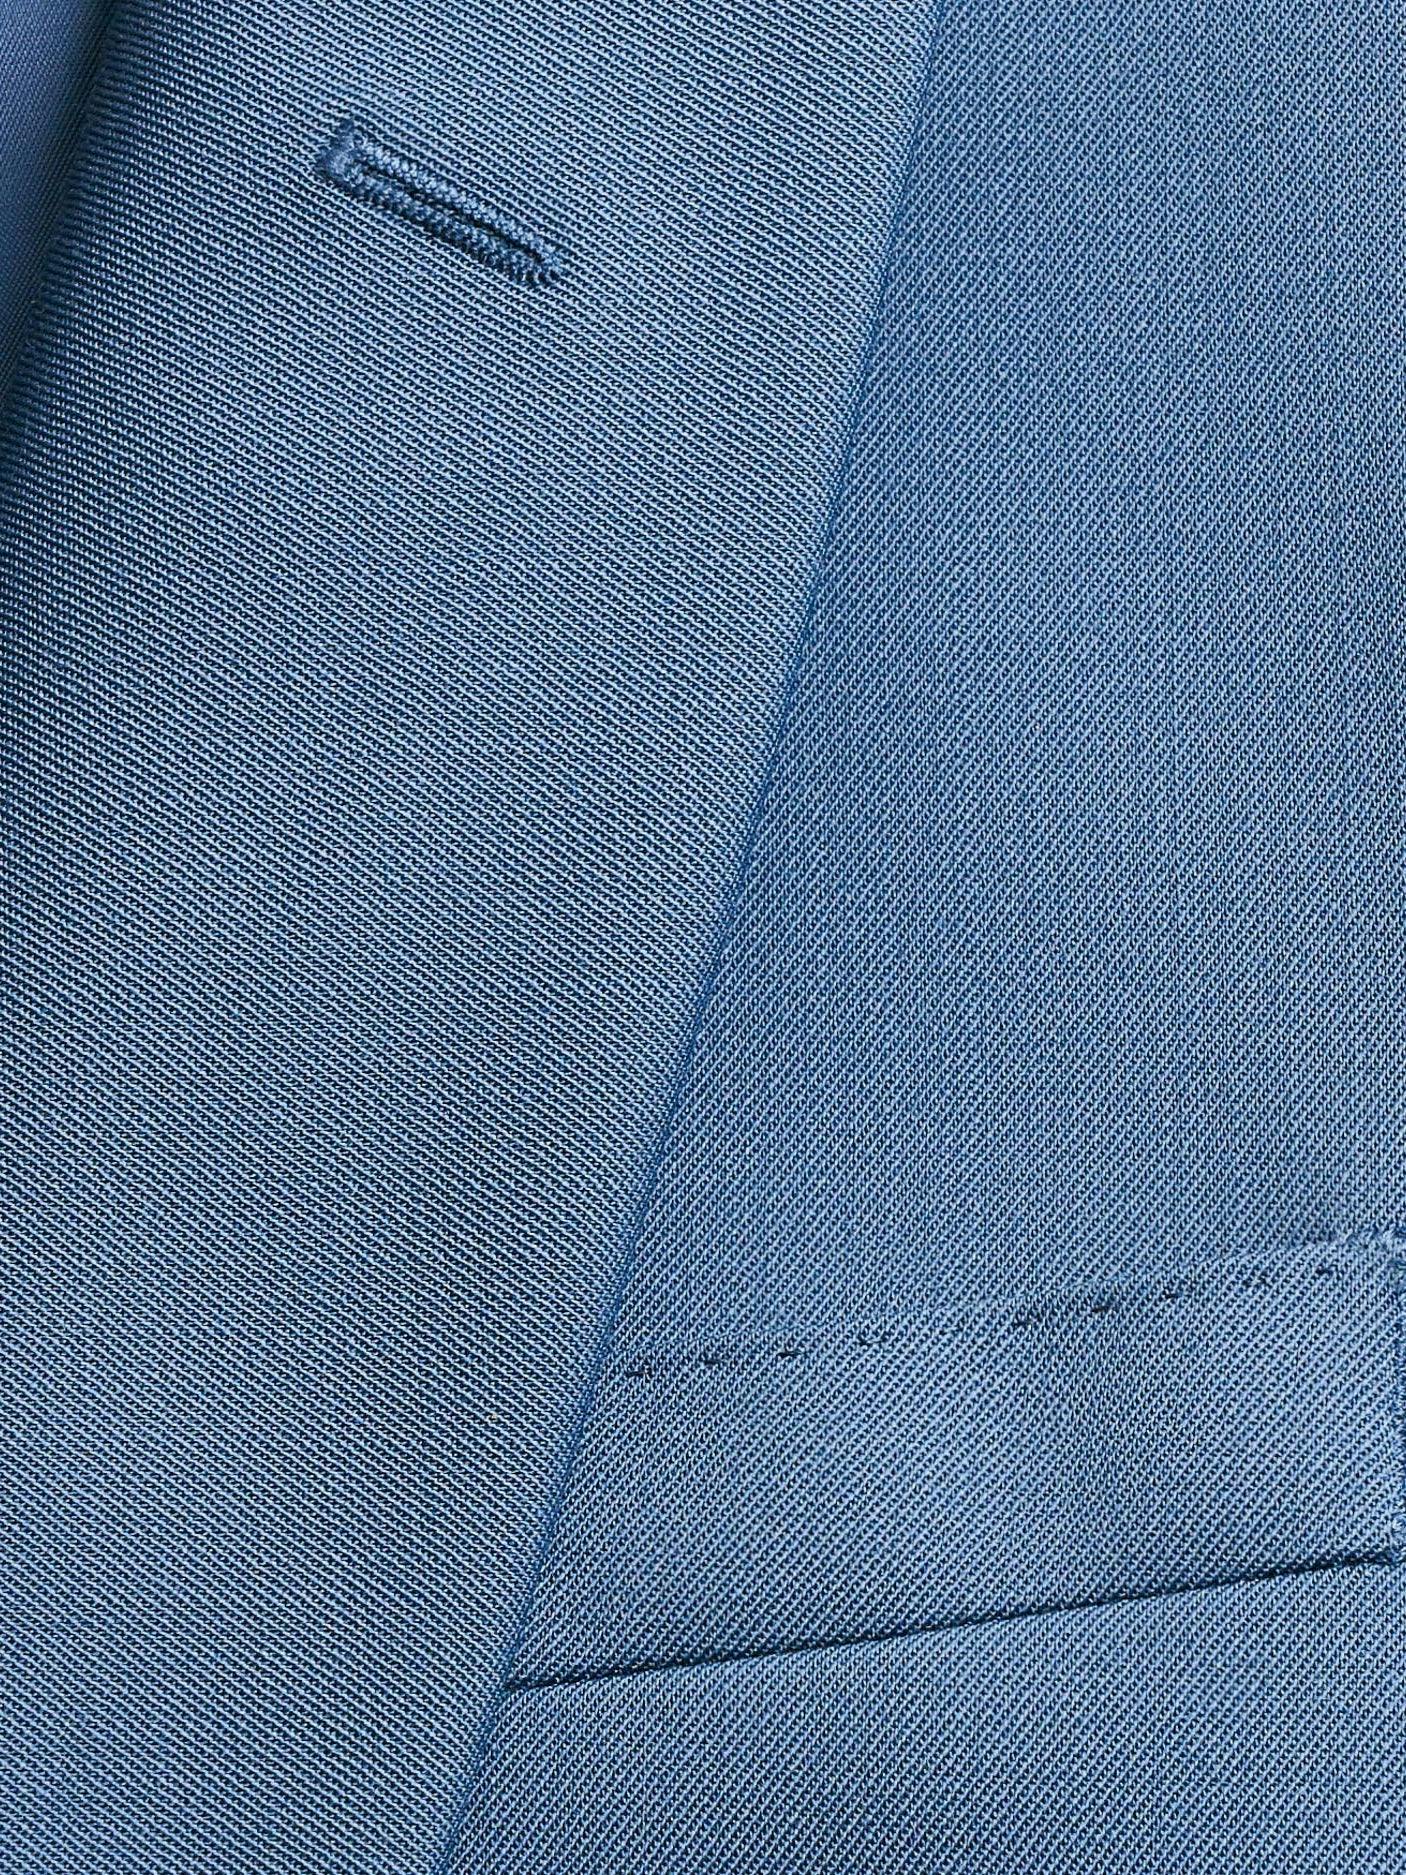 Light Blue Shawl Jacket Tuxedo